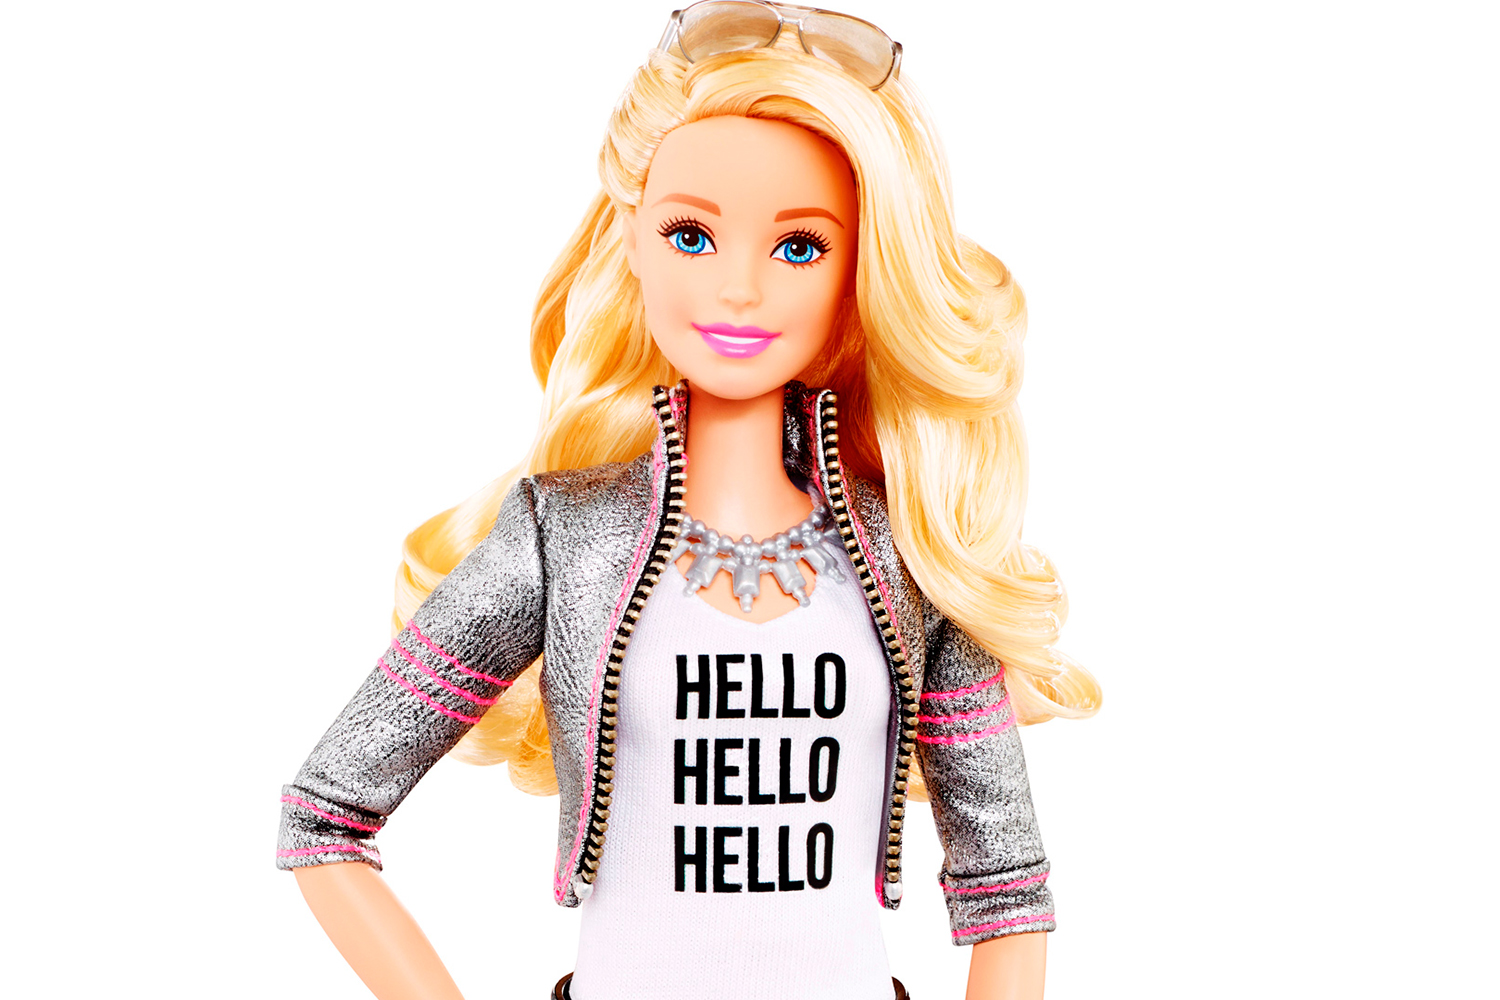 La llegada de la ciber-barbie convierte a la muñeca en una peligrosa arma de espionaje domestico